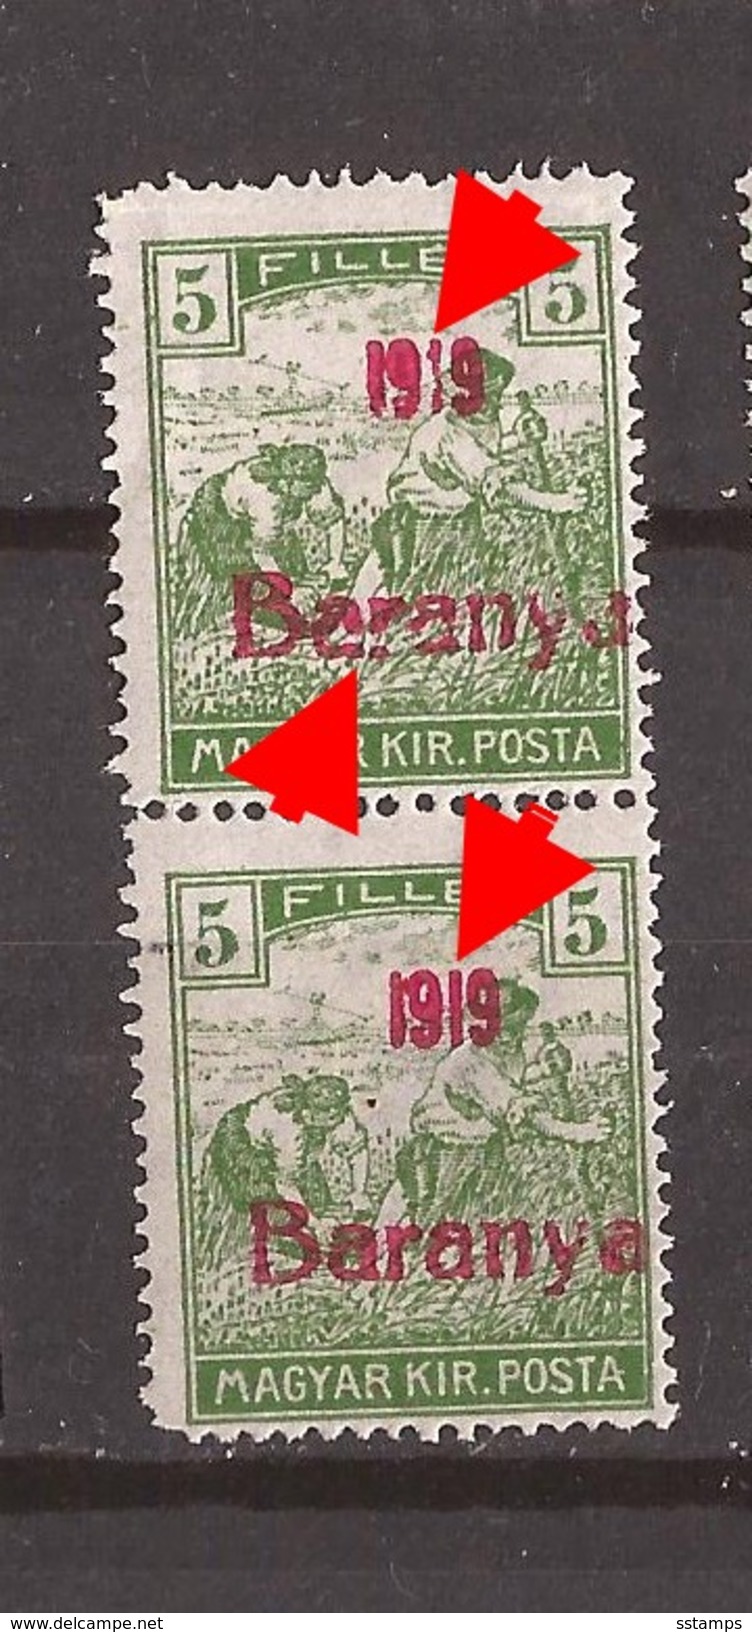 1919  6   BARANYA  UNGARN SERBIA JUGOSLAVIJA OVERPRINT  TYP II TYP III  NEVER HINGED - Baranya